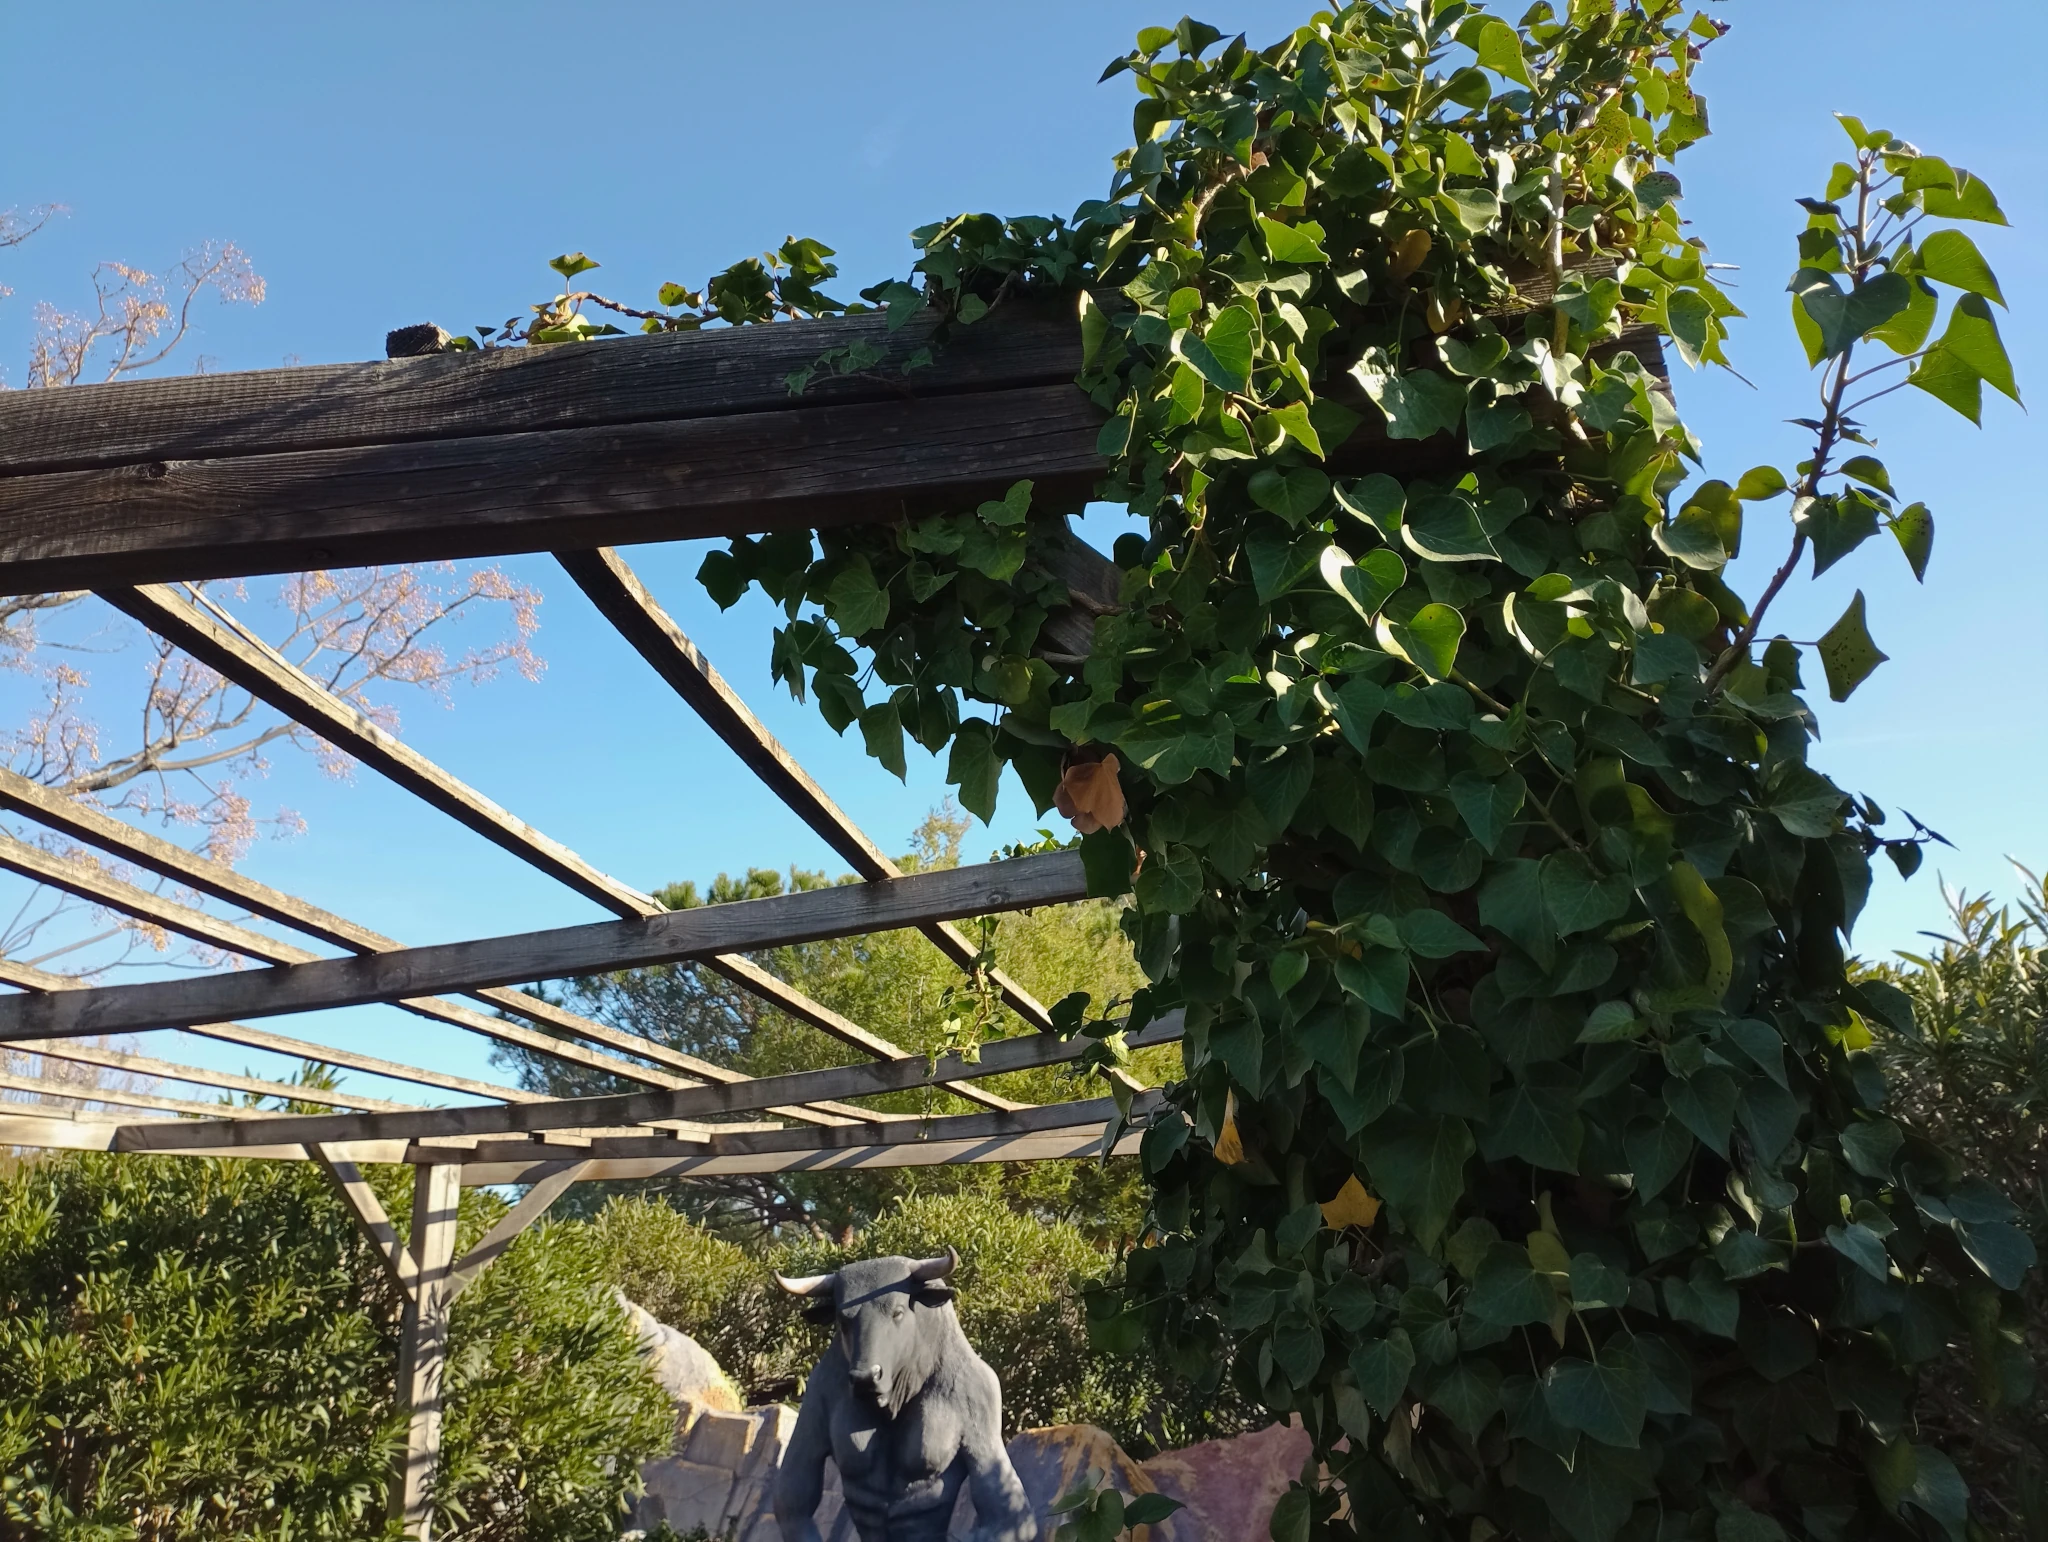 Climbing ivy to make shadow at Fantassia park